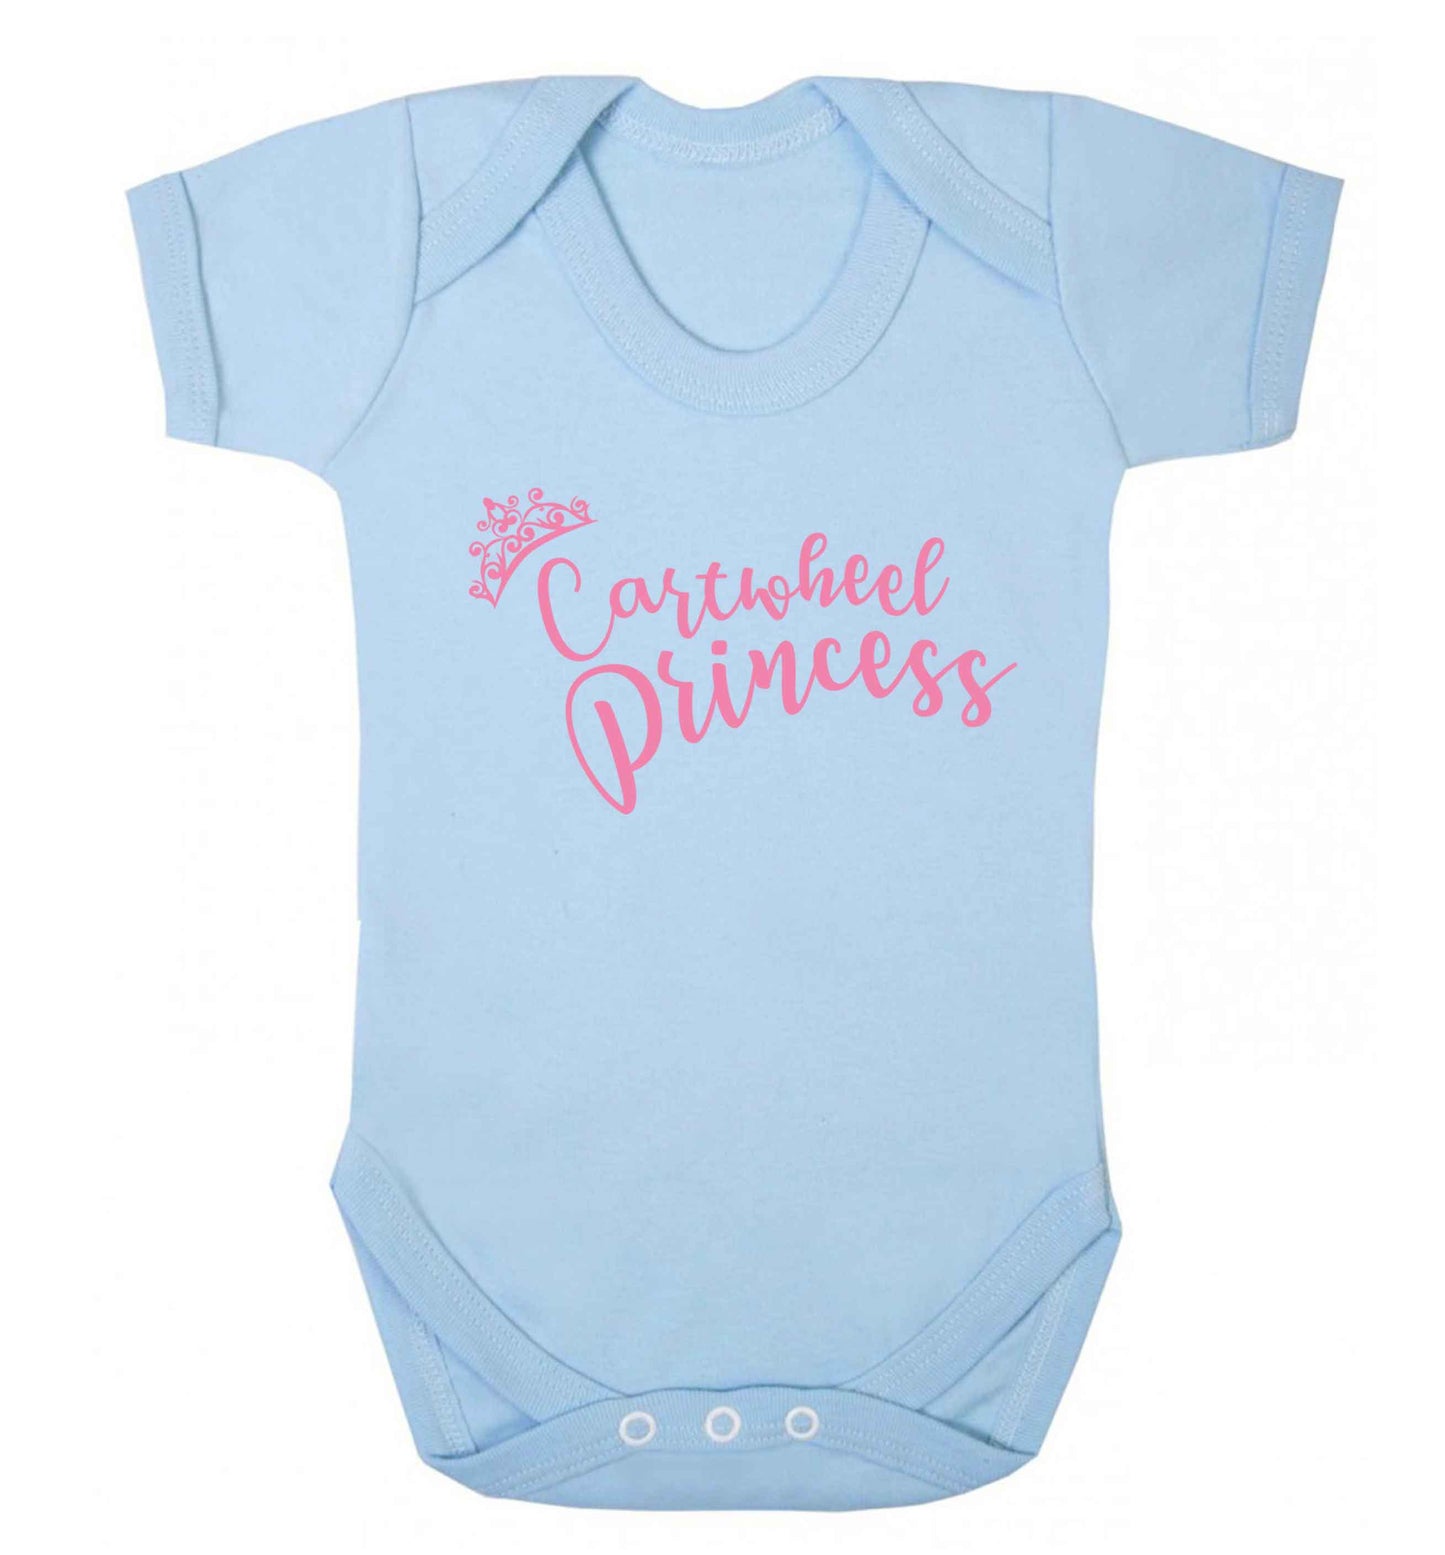 Cartwheel princess Baby Vest pale blue 18-24 months